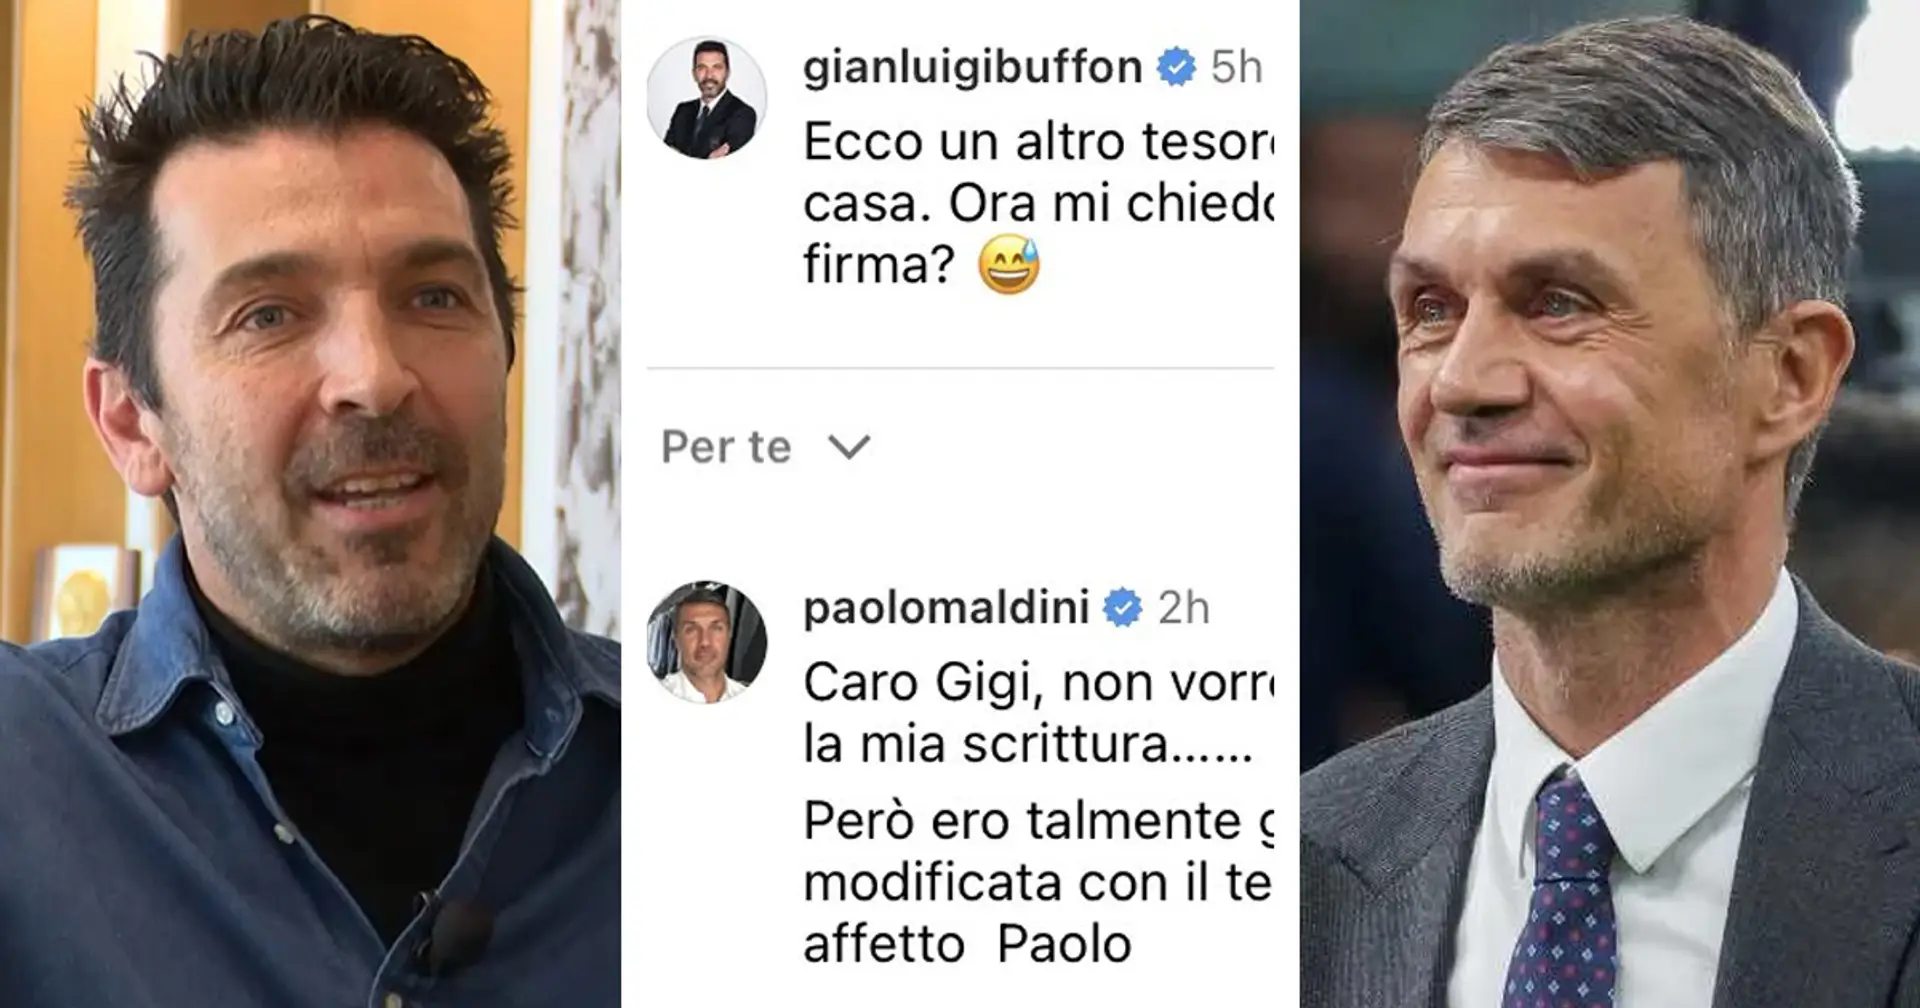 Siparietto tra ex Campioni! Paolo Maldini prende in giro l'amico Buffon sui social: "Non vorrei deluderti..."